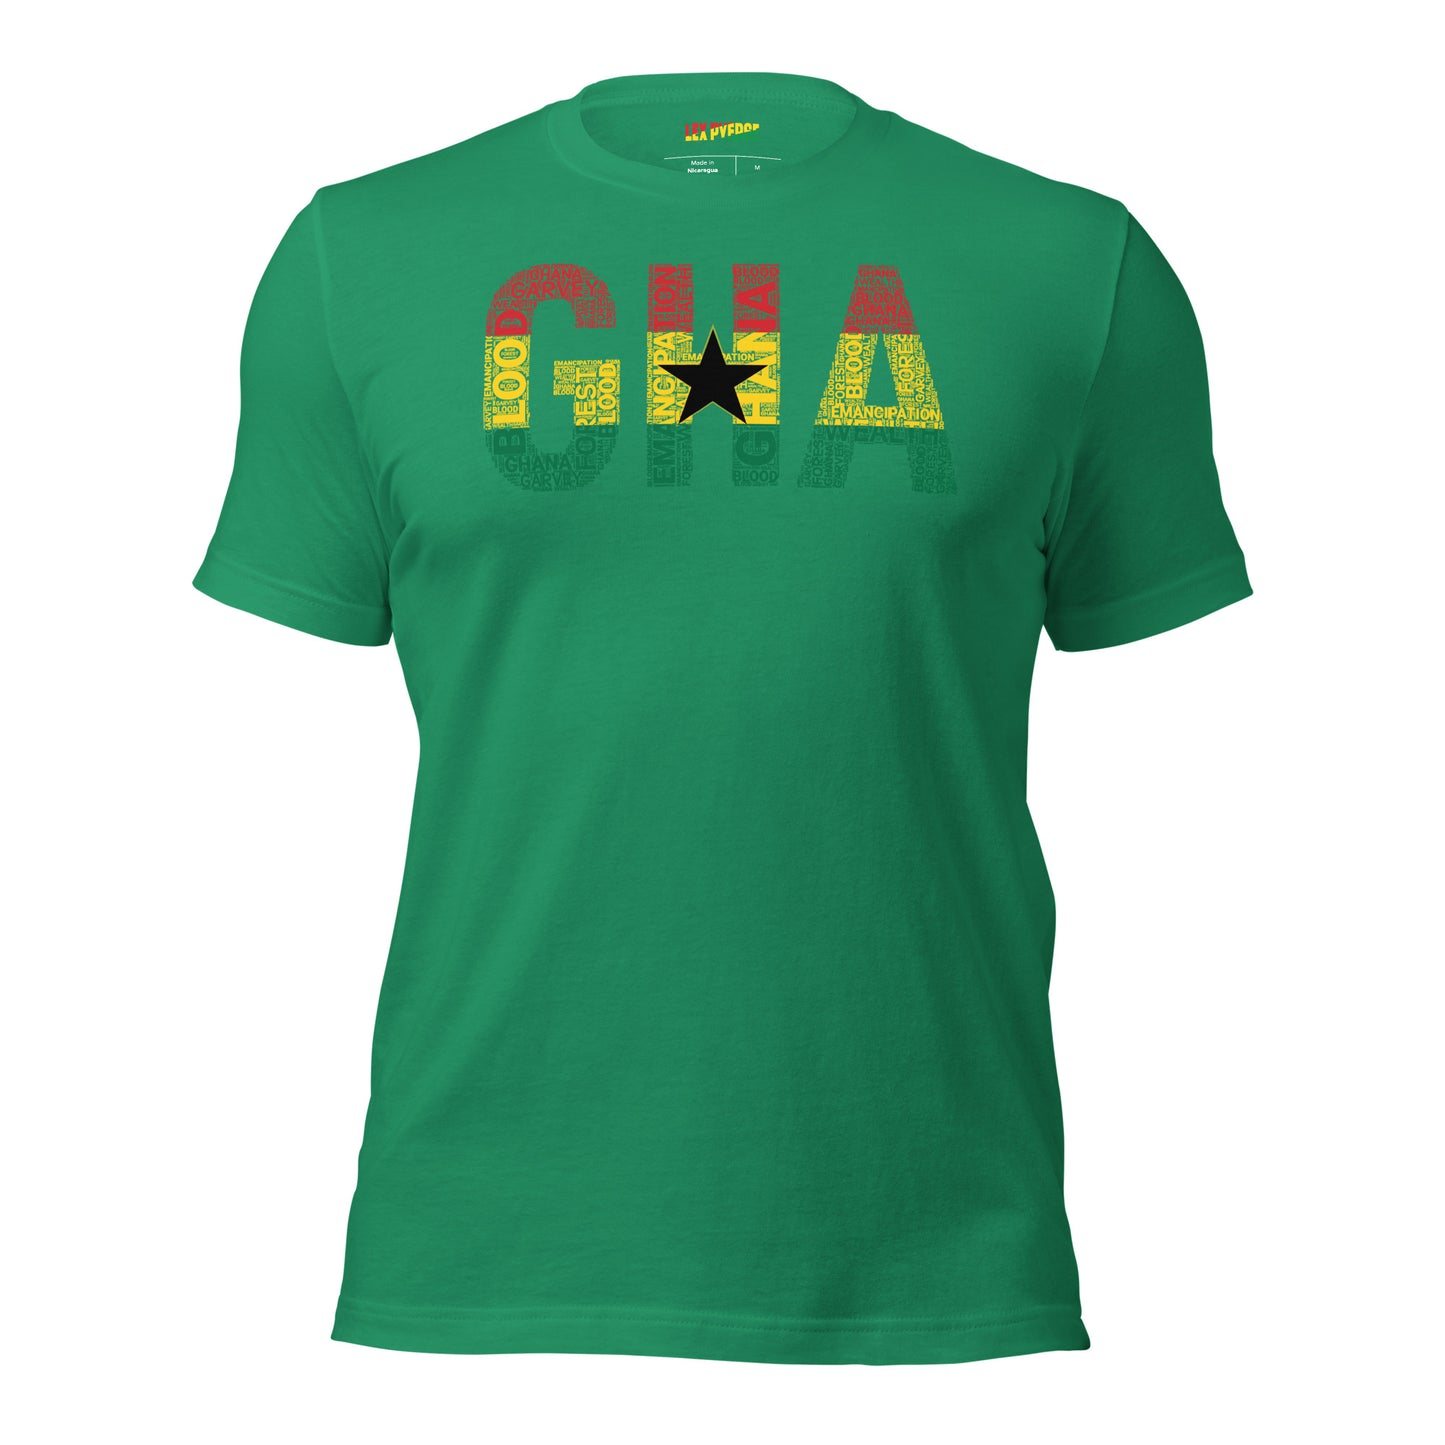 GHANA Abbreviated National Flag Inspired Word Cluster Short-Sleeve Unisex T-Shirt